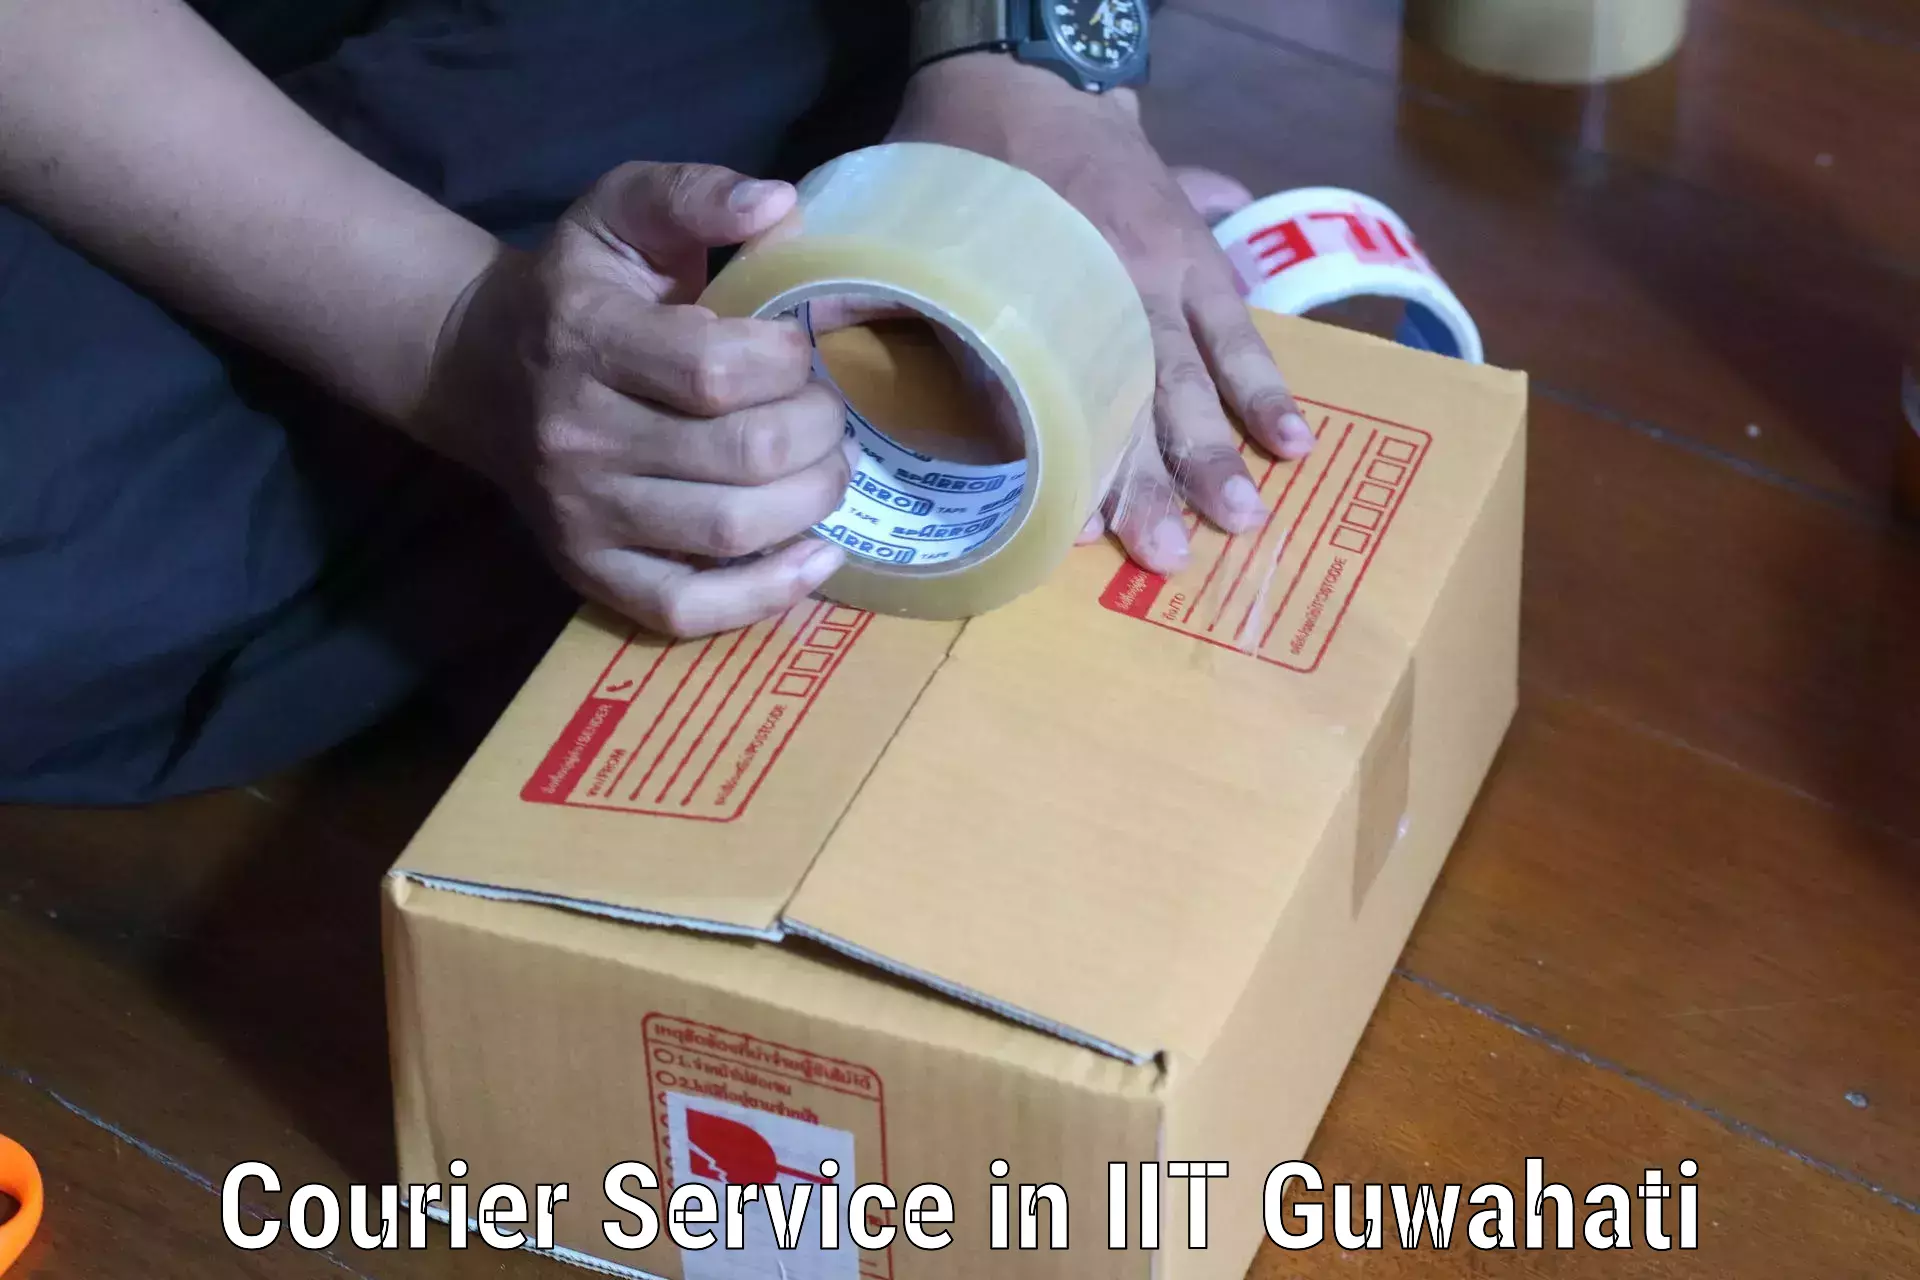 Efficient logistics management in IIT Guwahati